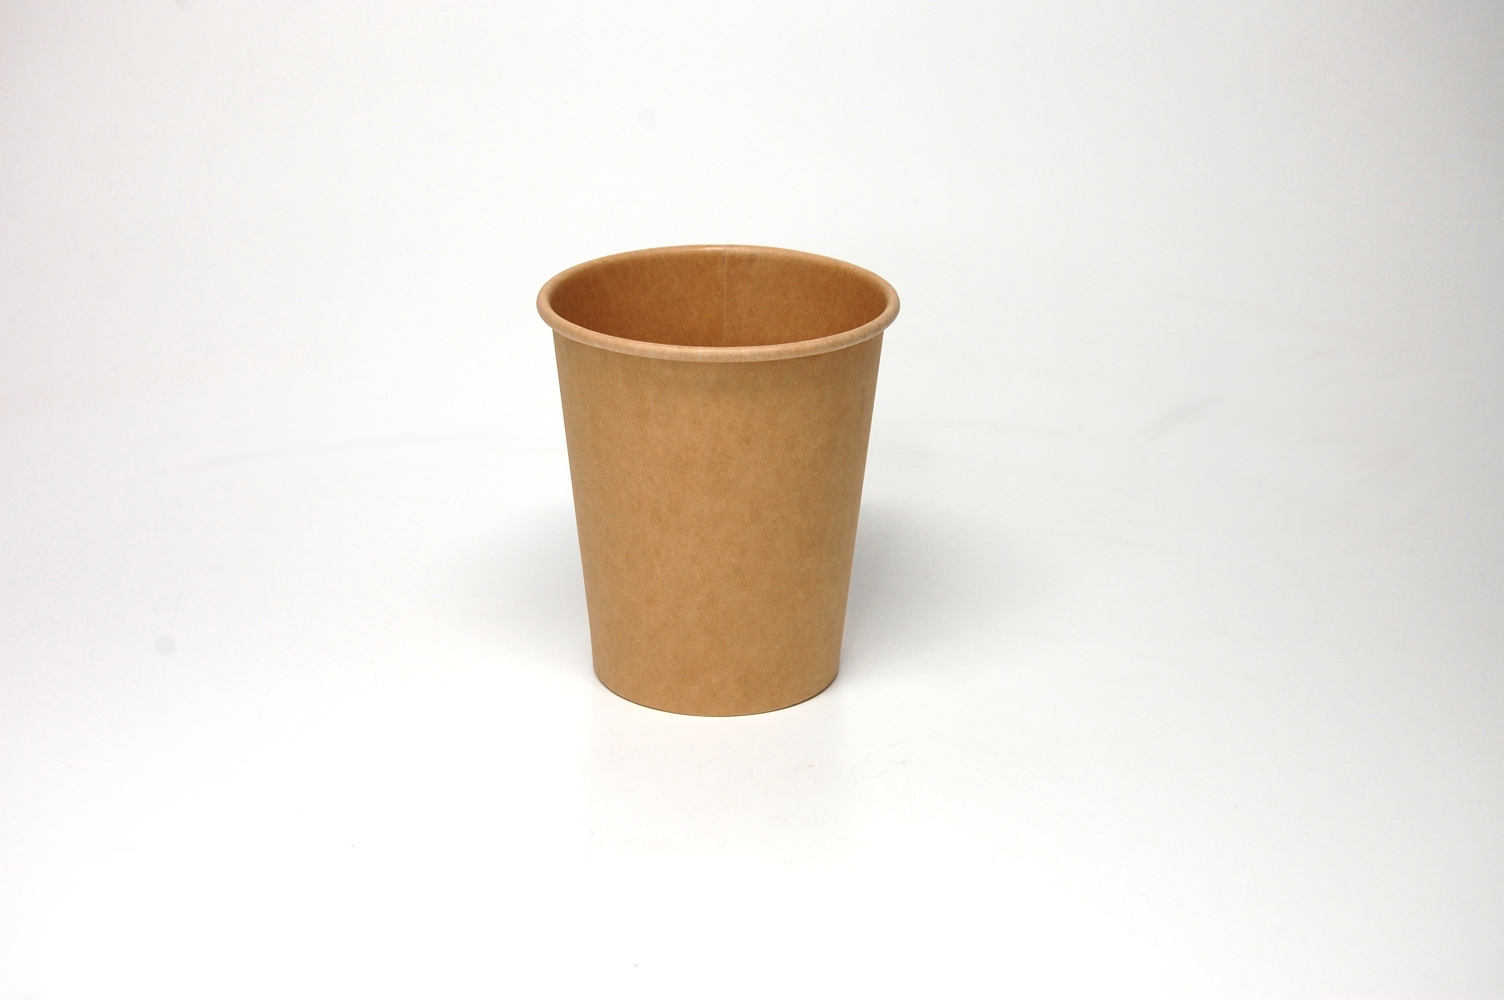 50 Stück Coffee-to-go-Becher D.8cm 200ml/8oz KRAFT CUPS braun